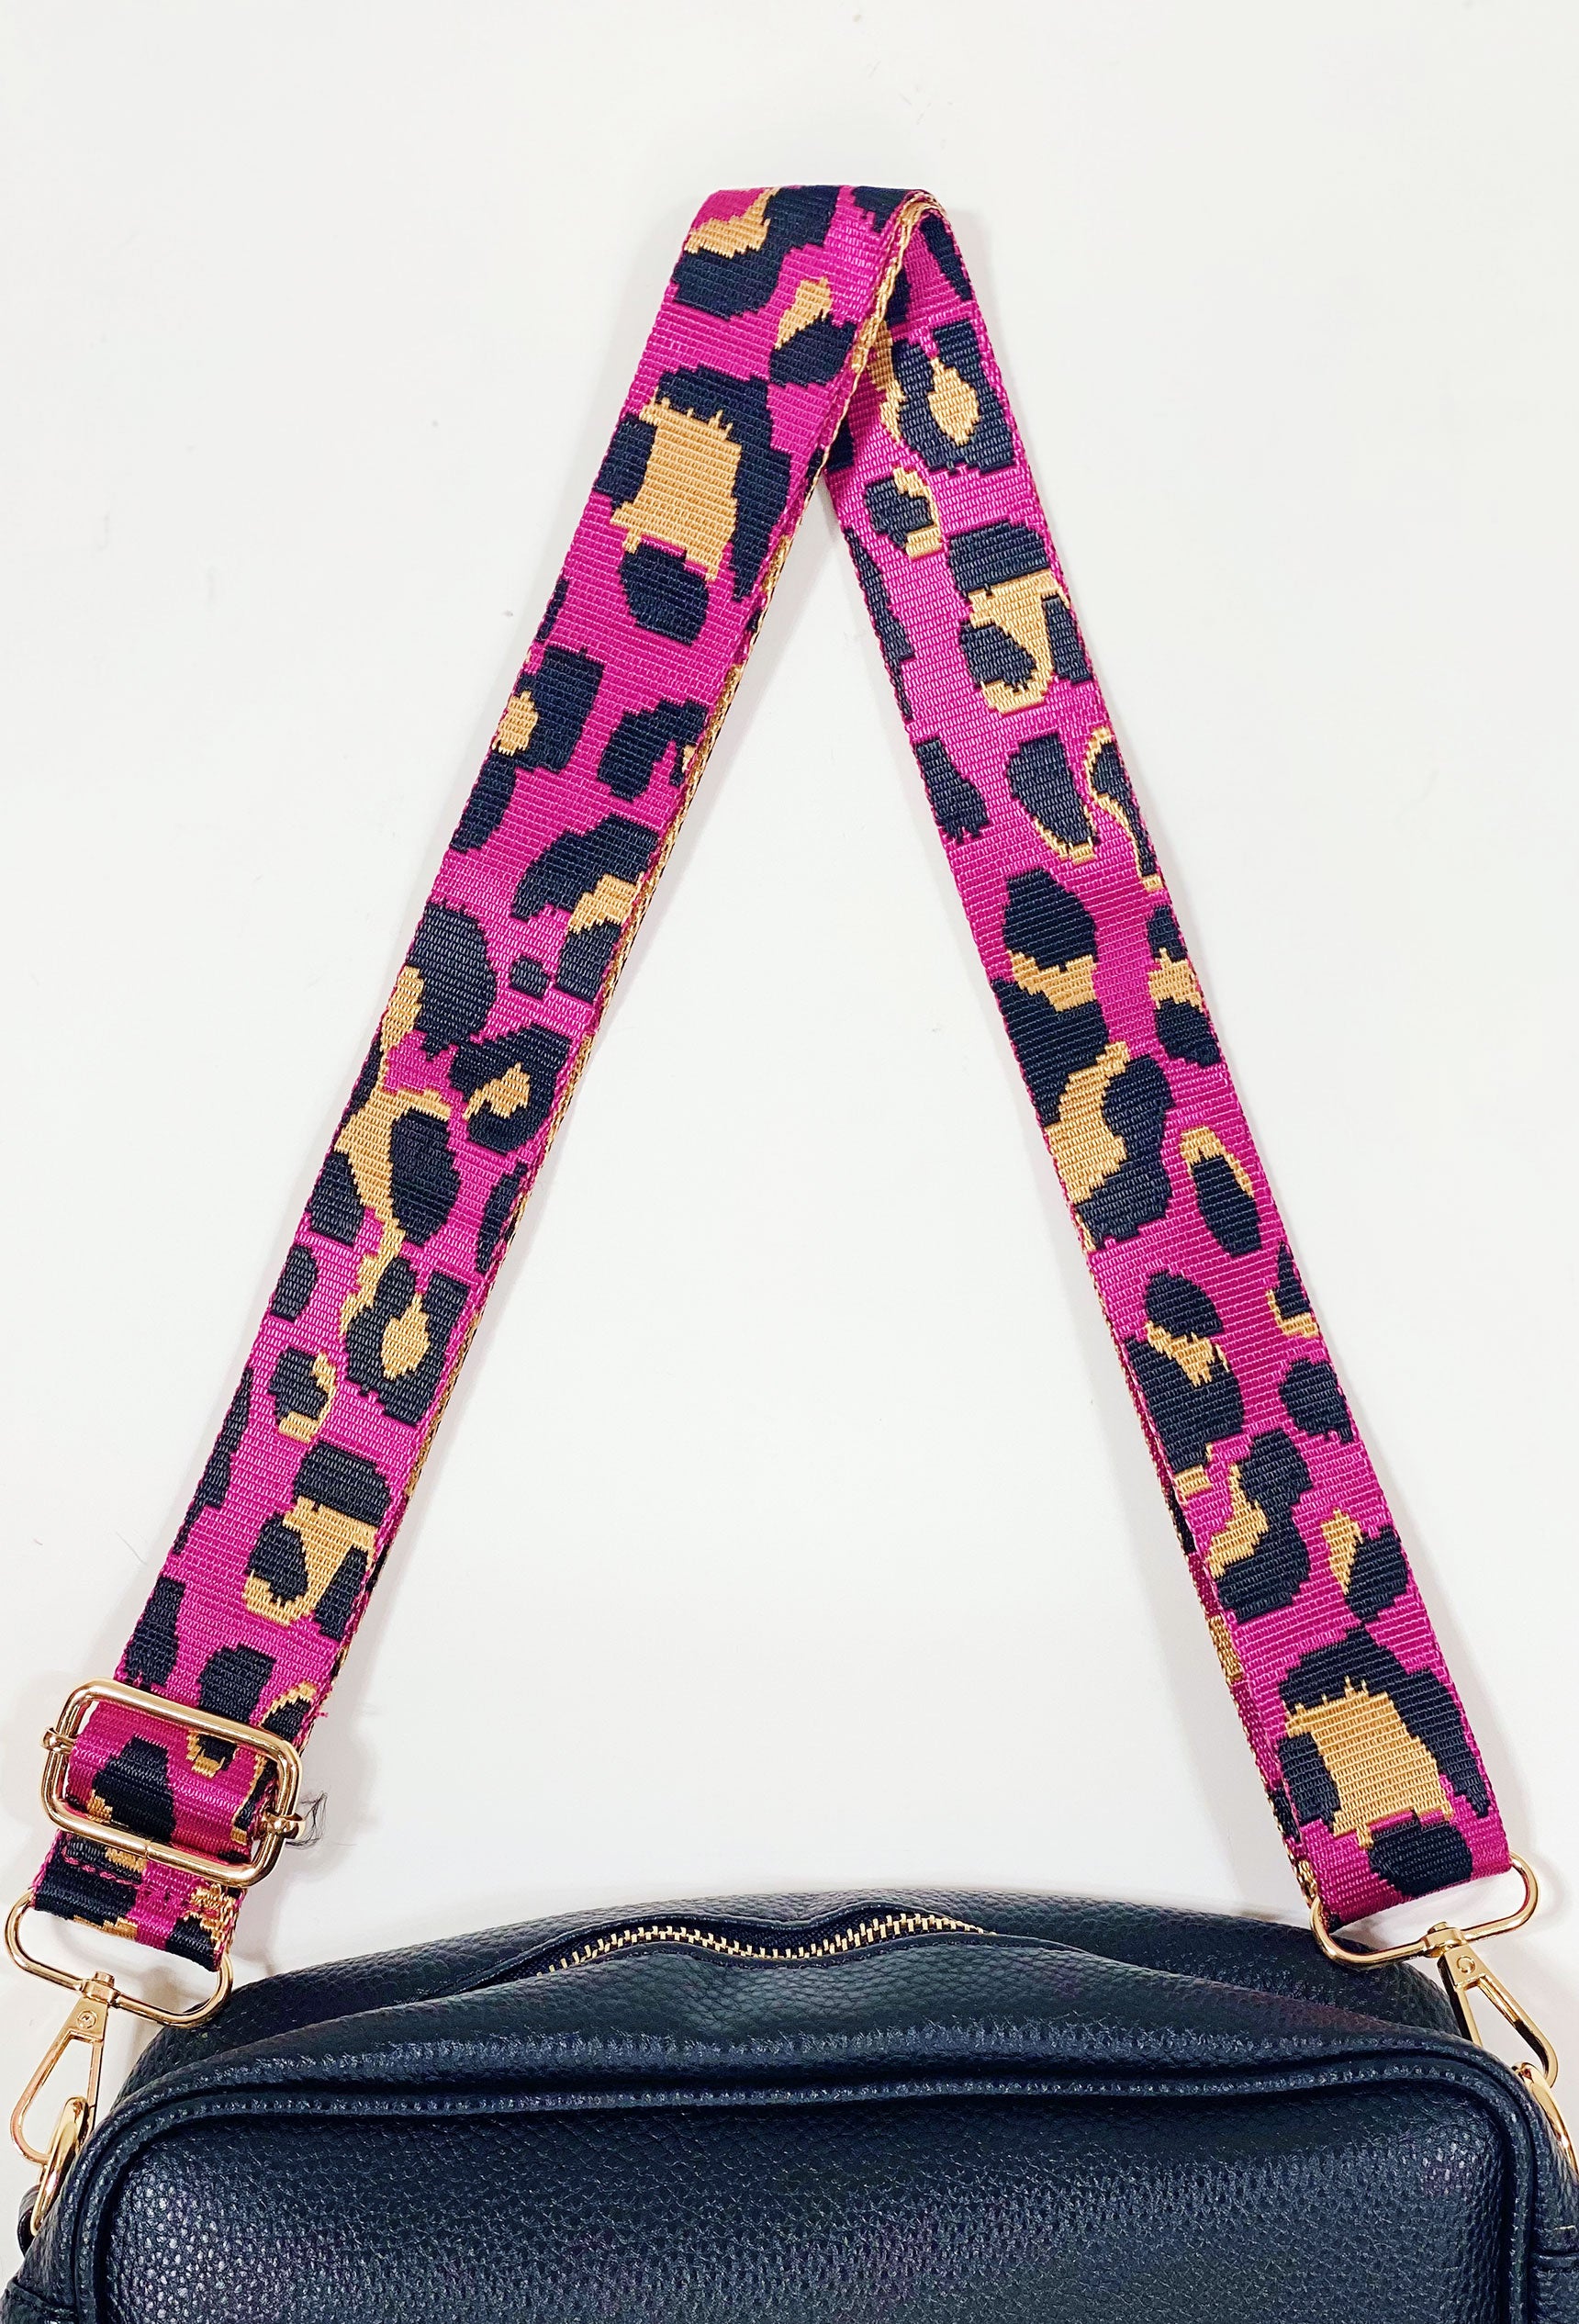 Crossbody Bag Shoulder Strap in Pink Leopard, pink bag strap, black and brown leopard print, adjustable, gold detailing